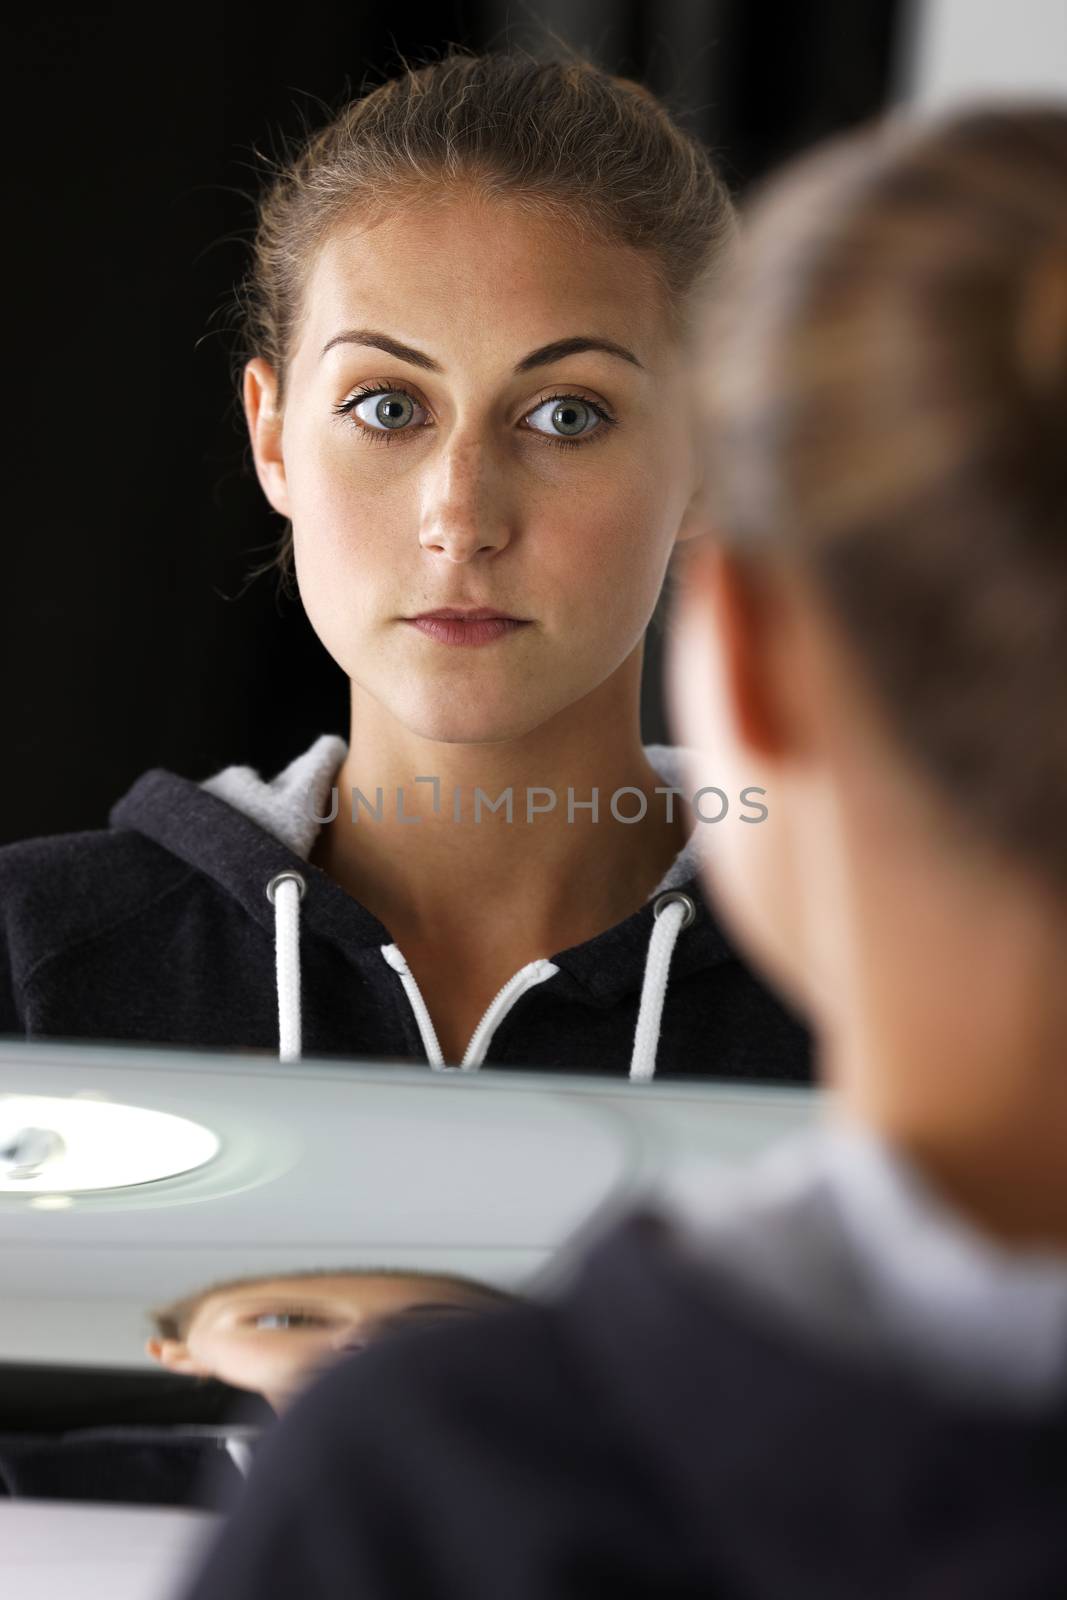 Woman in bathroom mirror. by studiofi